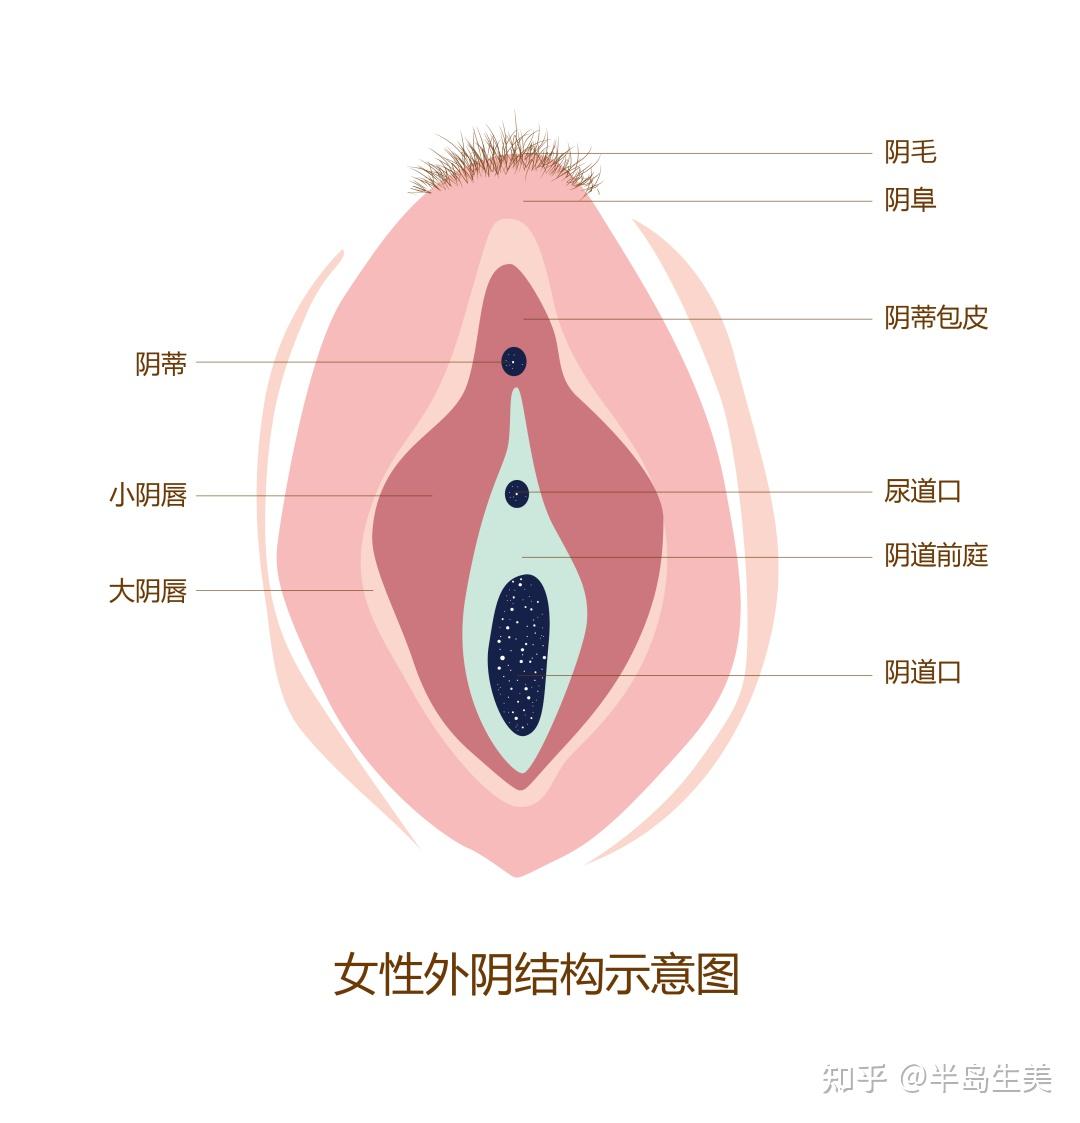 女性外阴包括大小阴唇,阴蒂,阴蒂包皮,阴道前庭,尿道外口,阴道外口